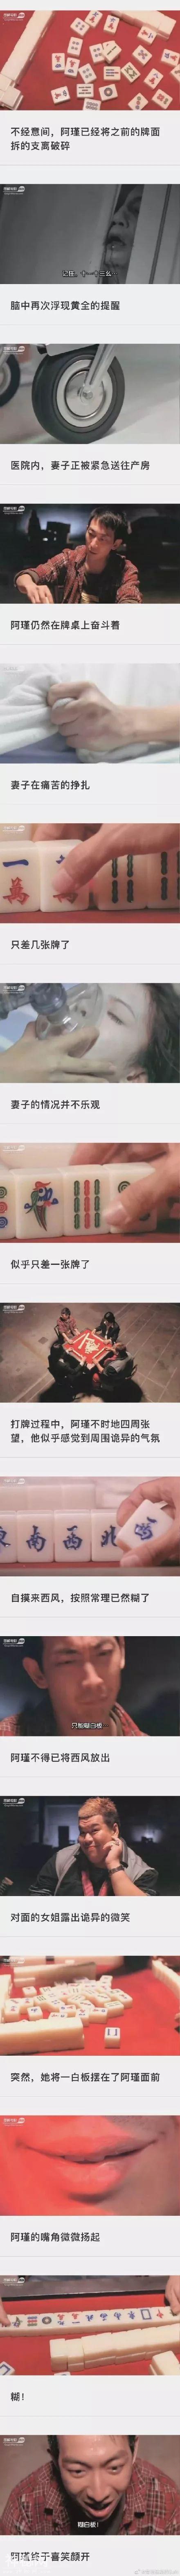 「分享」图解香港经典恐怖片《十三幺》-11.jpg